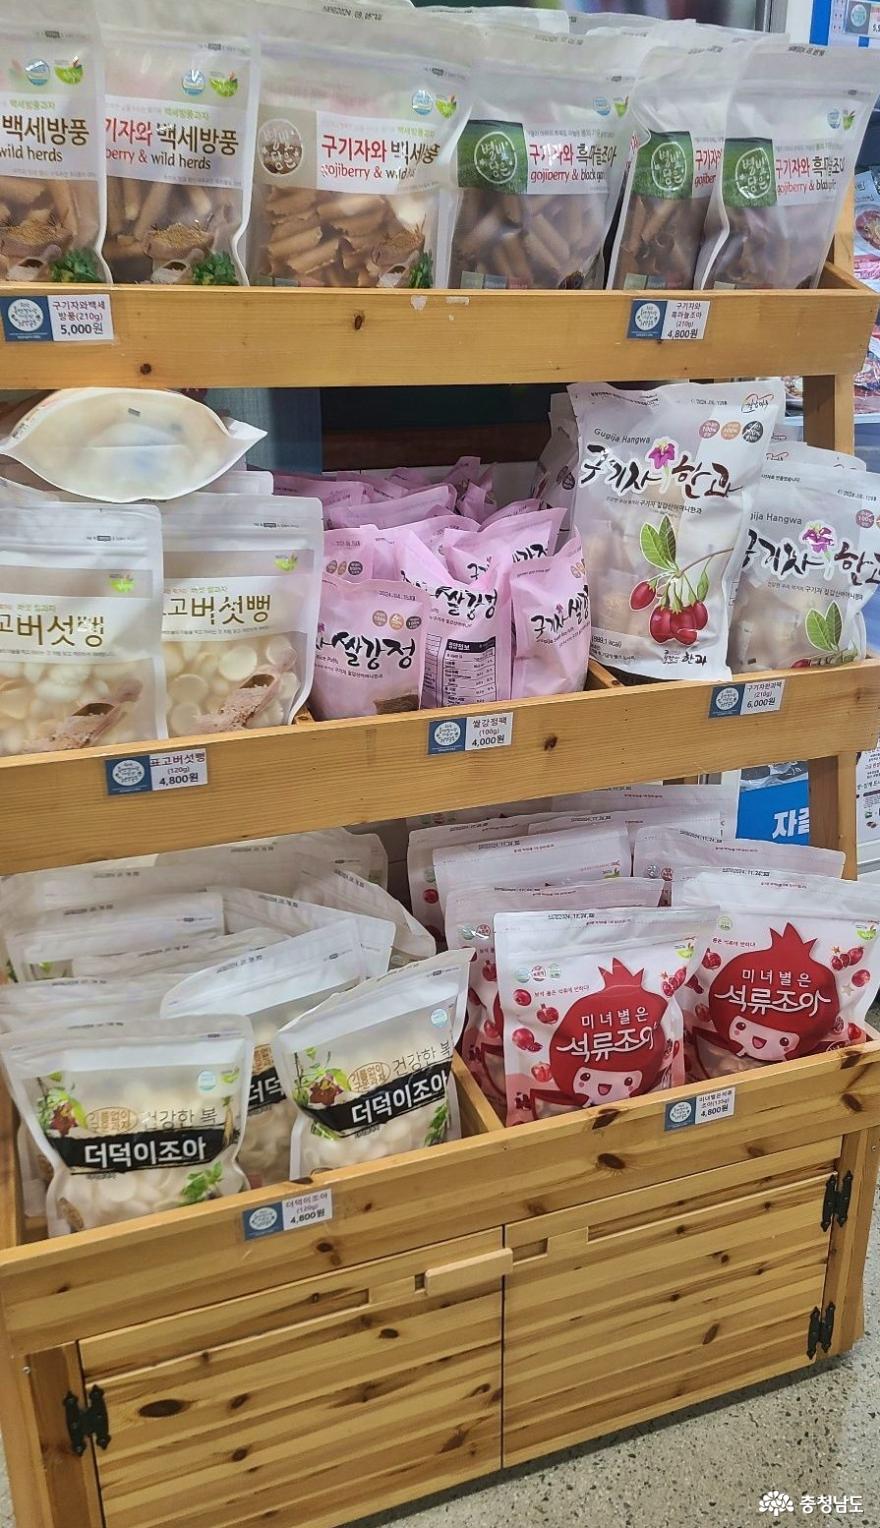 기분좋게 충동구매를 하게 되는 청양로컬푸드직매장 " 농부마켓"에서 사진